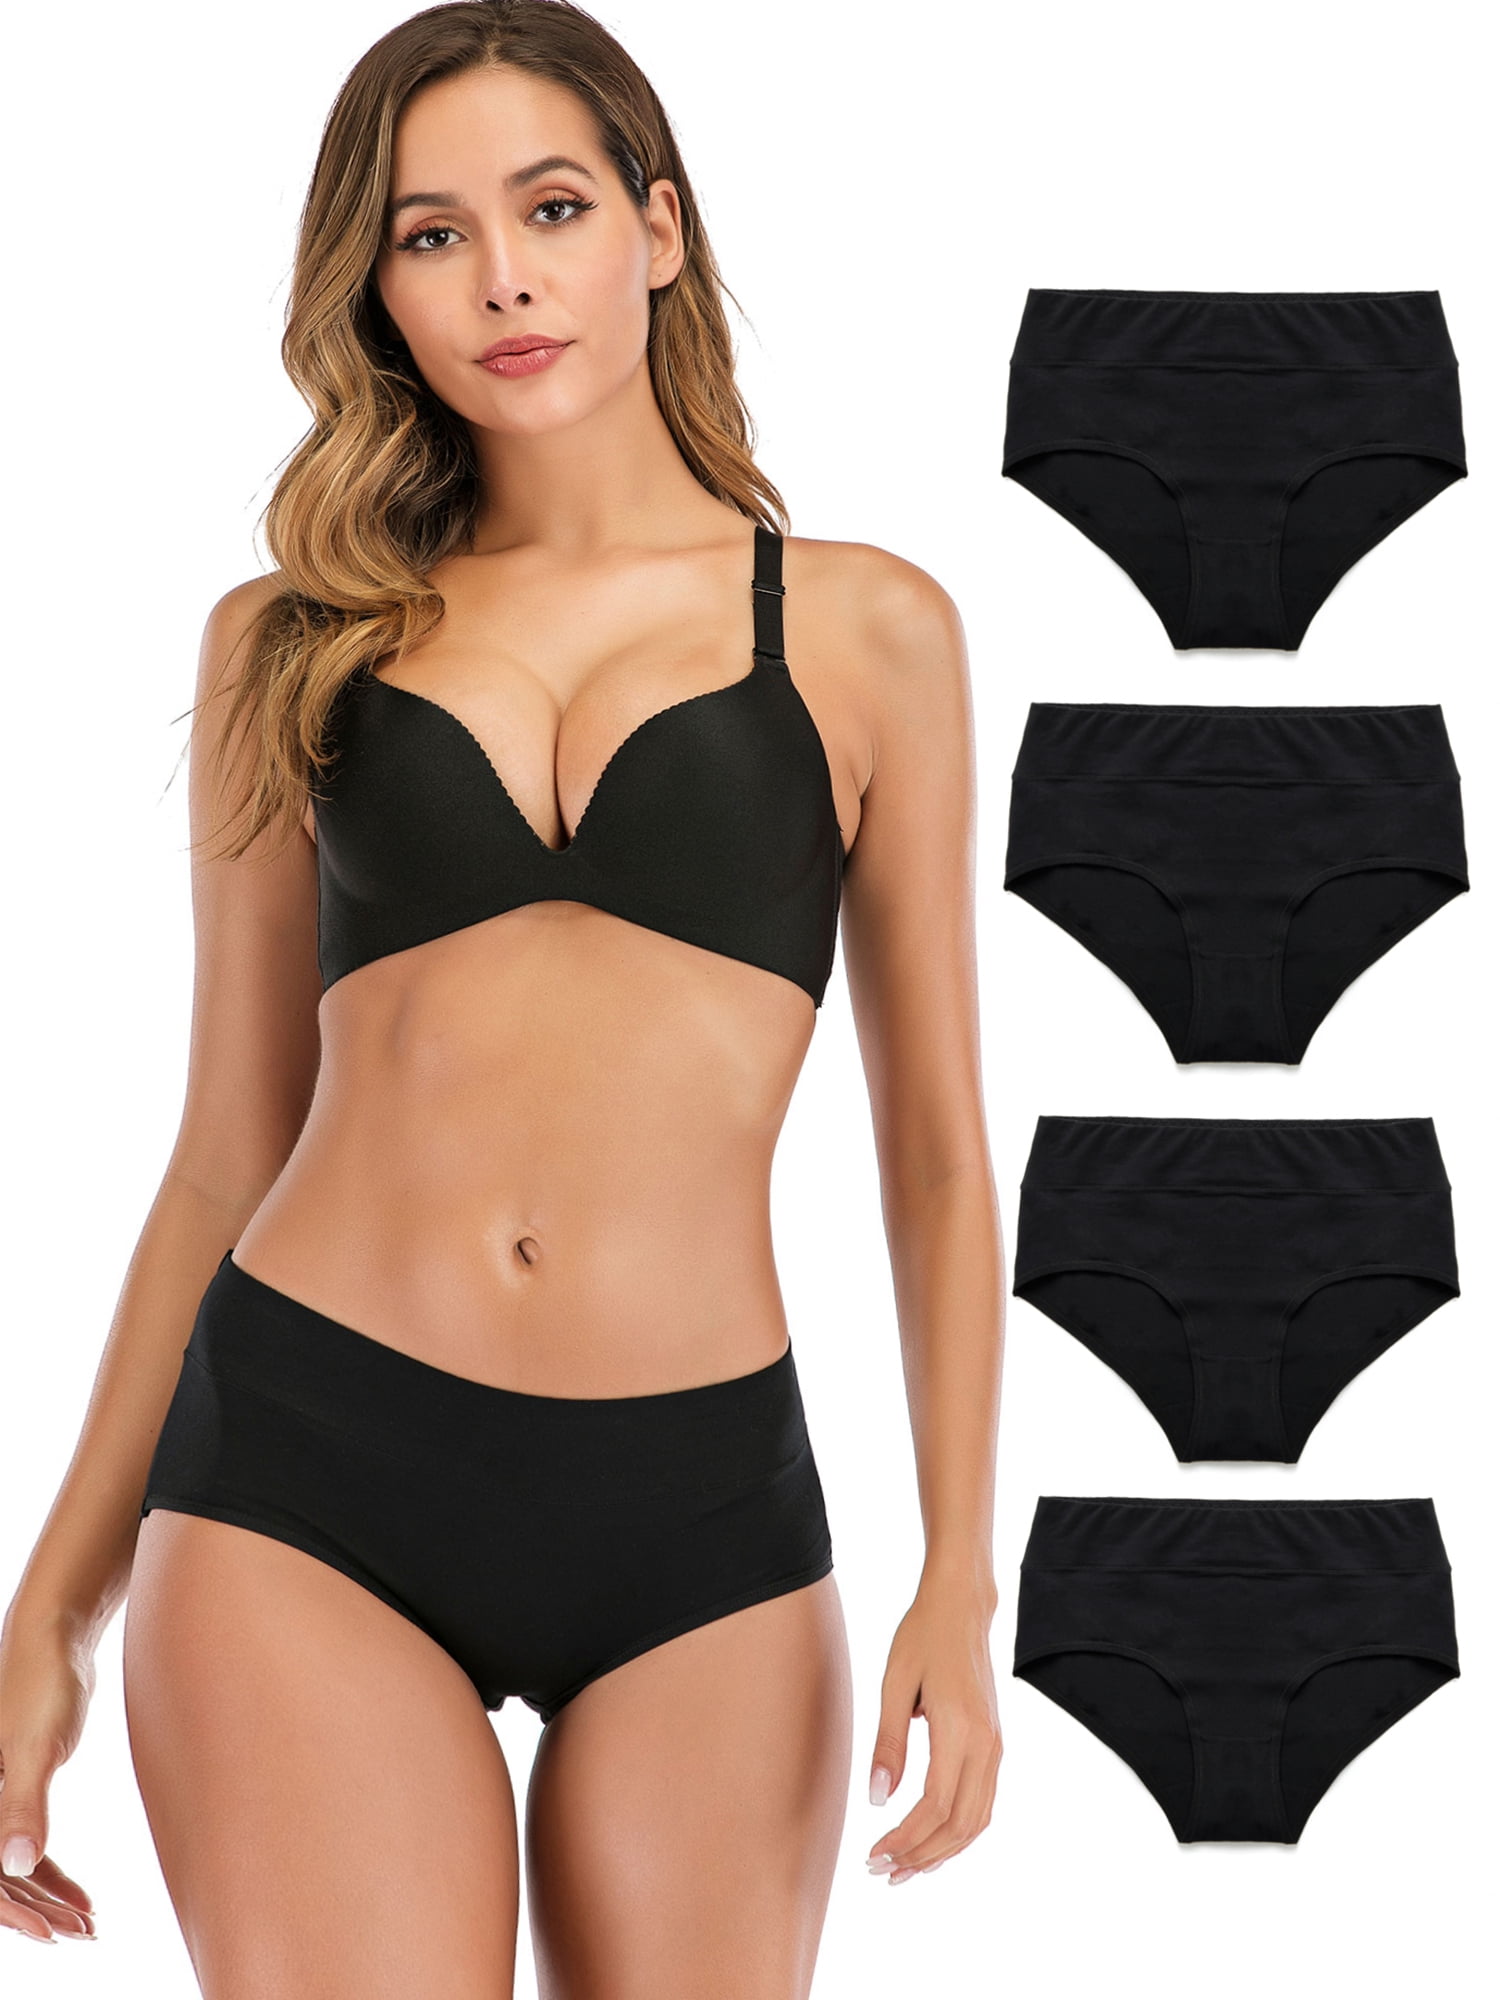 SAYFUT Women's High Waist Black Underwear Seamless Brief Panties Full  Coverage Comfortable Cotton Underwear 4-Pack 